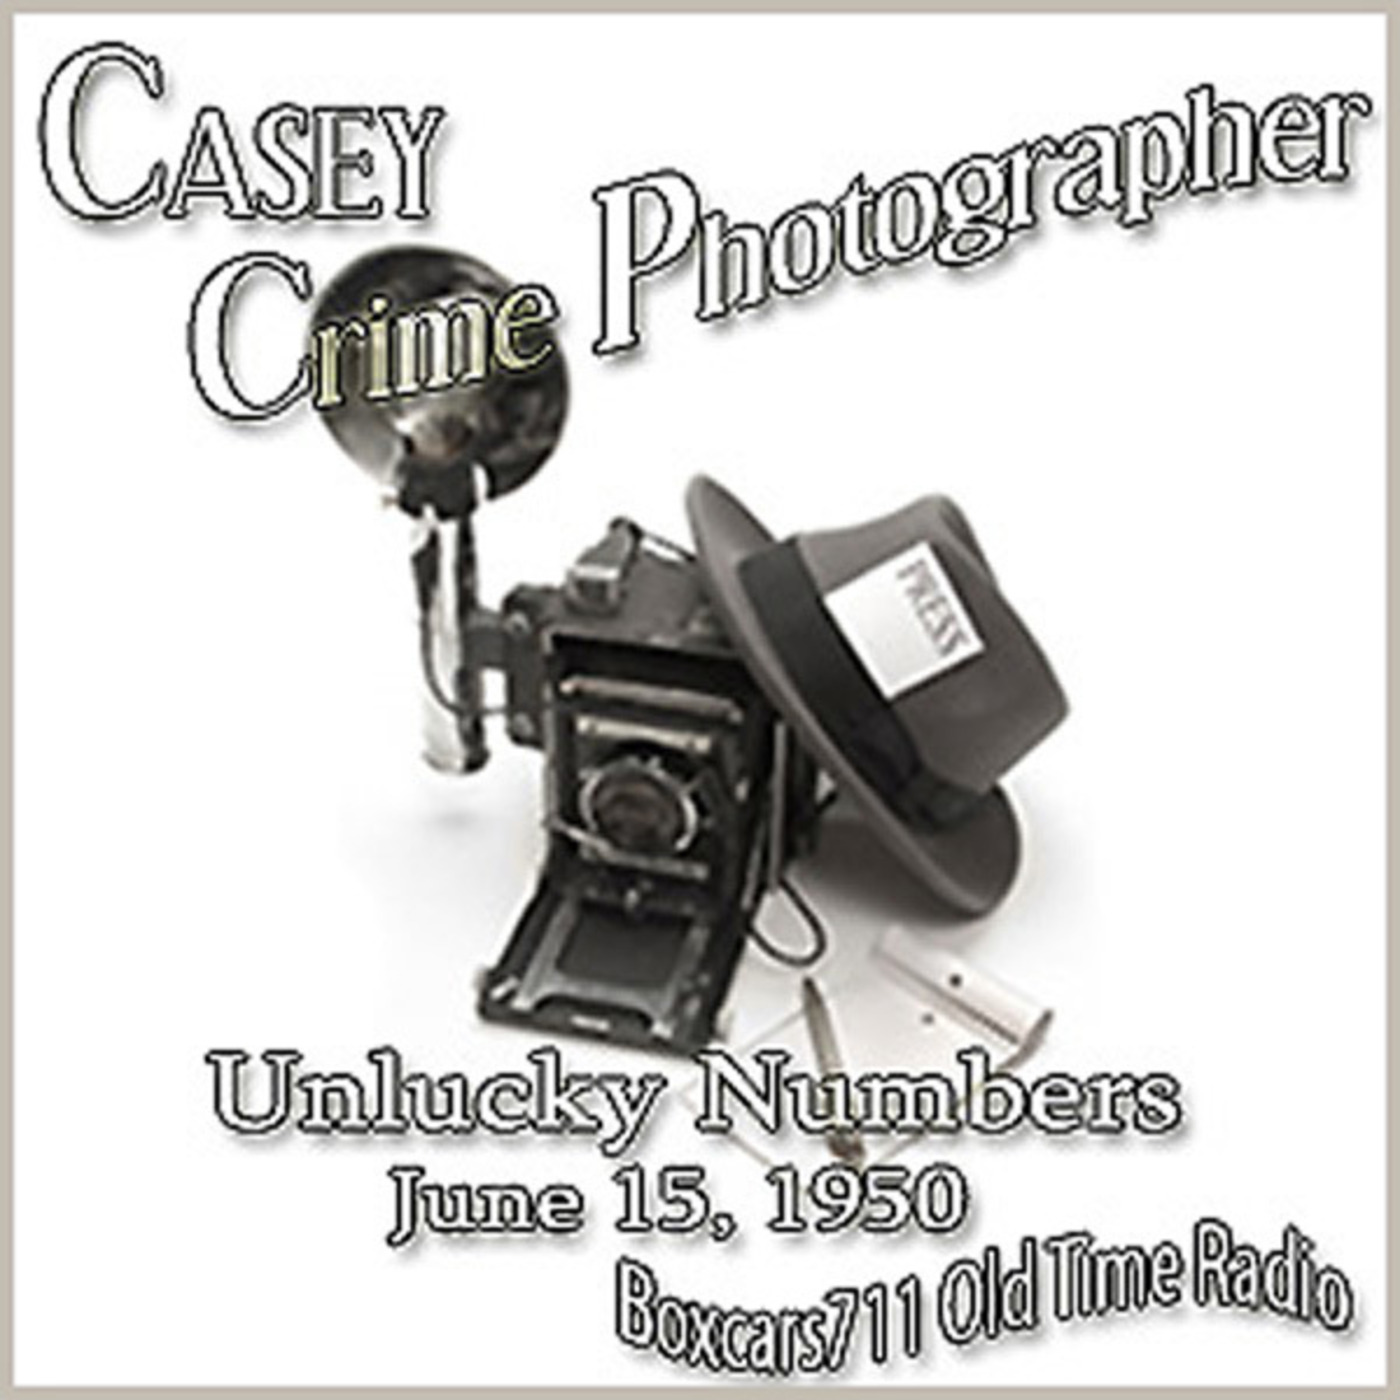 Episode 9611: Casey Crime Photographer - 